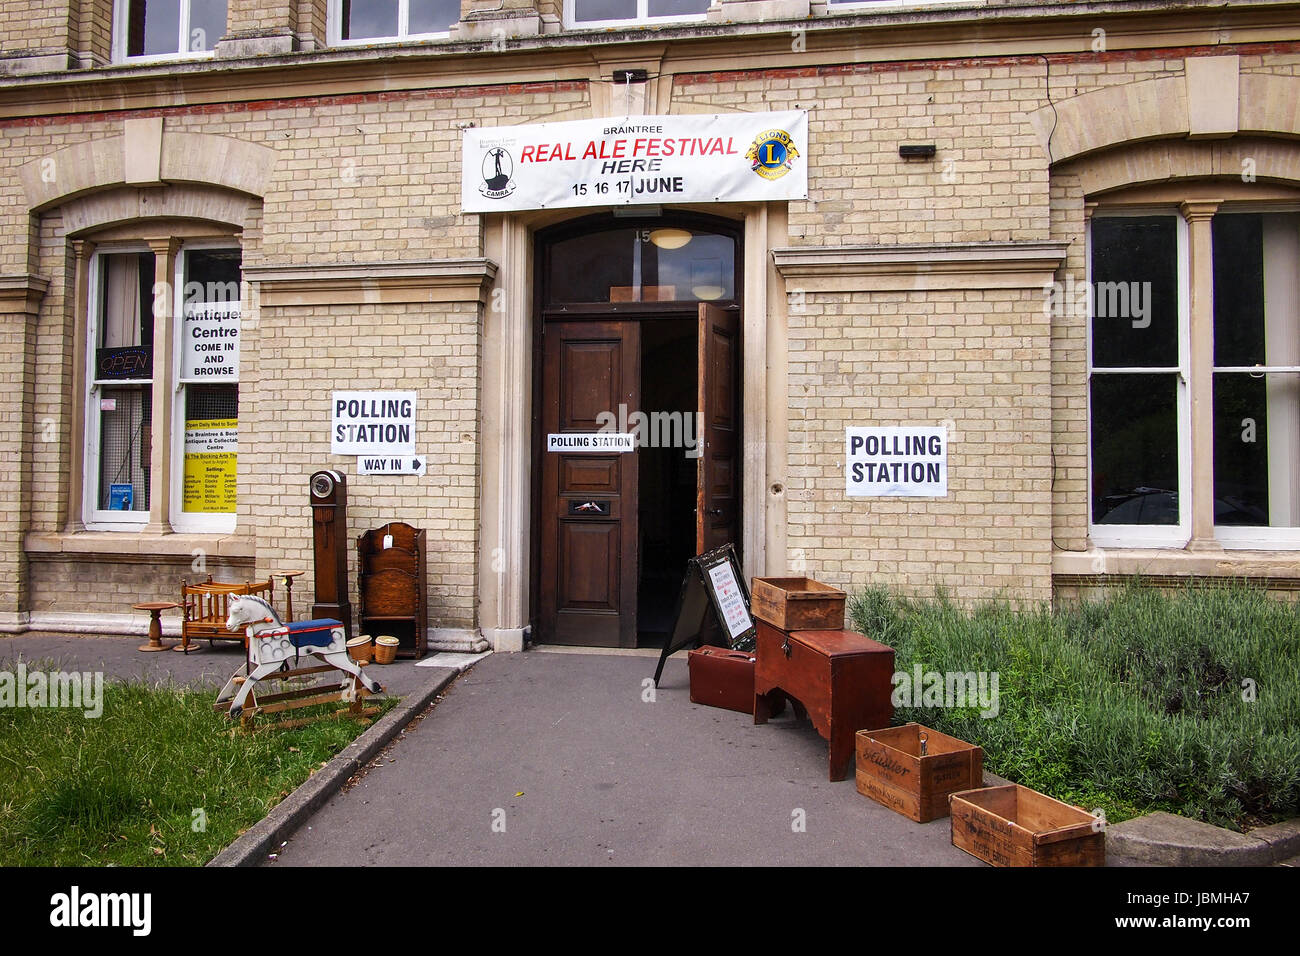 Polling Station Bocking Ende für britische allgemeine Wahl, Beschilderung zeigt. Detail des Einganges mit antiken Nippes Stockfoto